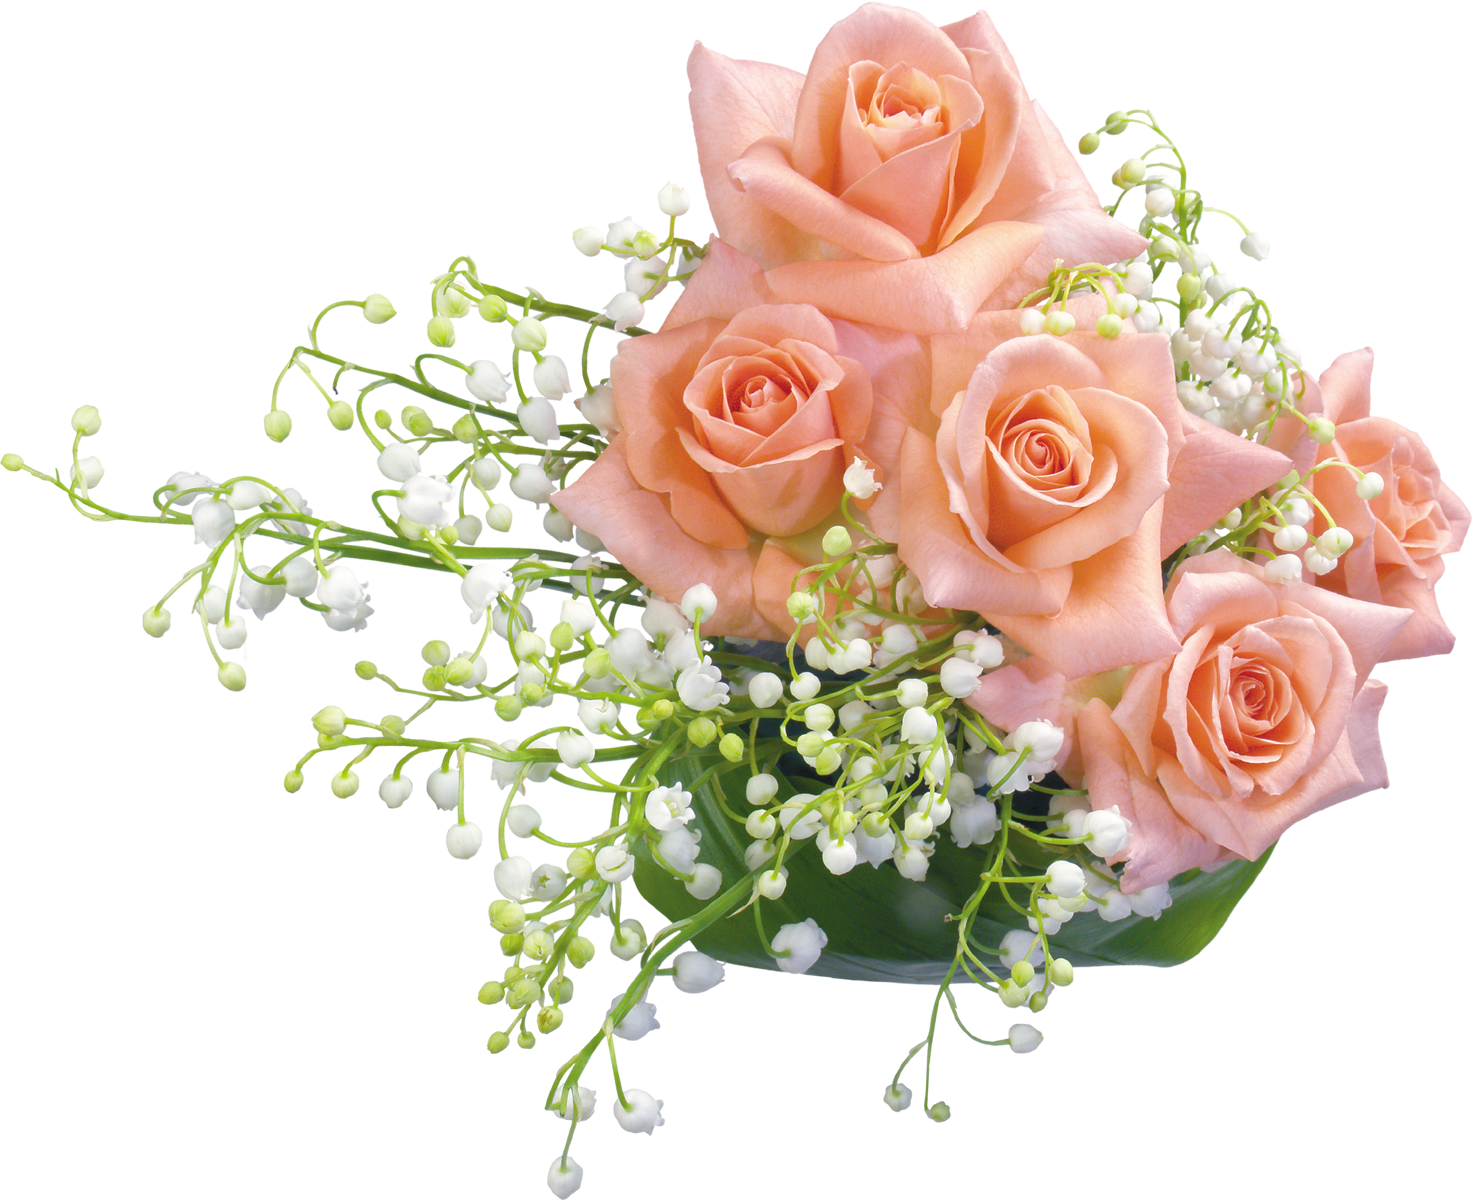 花の写真 フリー素材 花束no 056 ピンクのバラ 鈴蘭